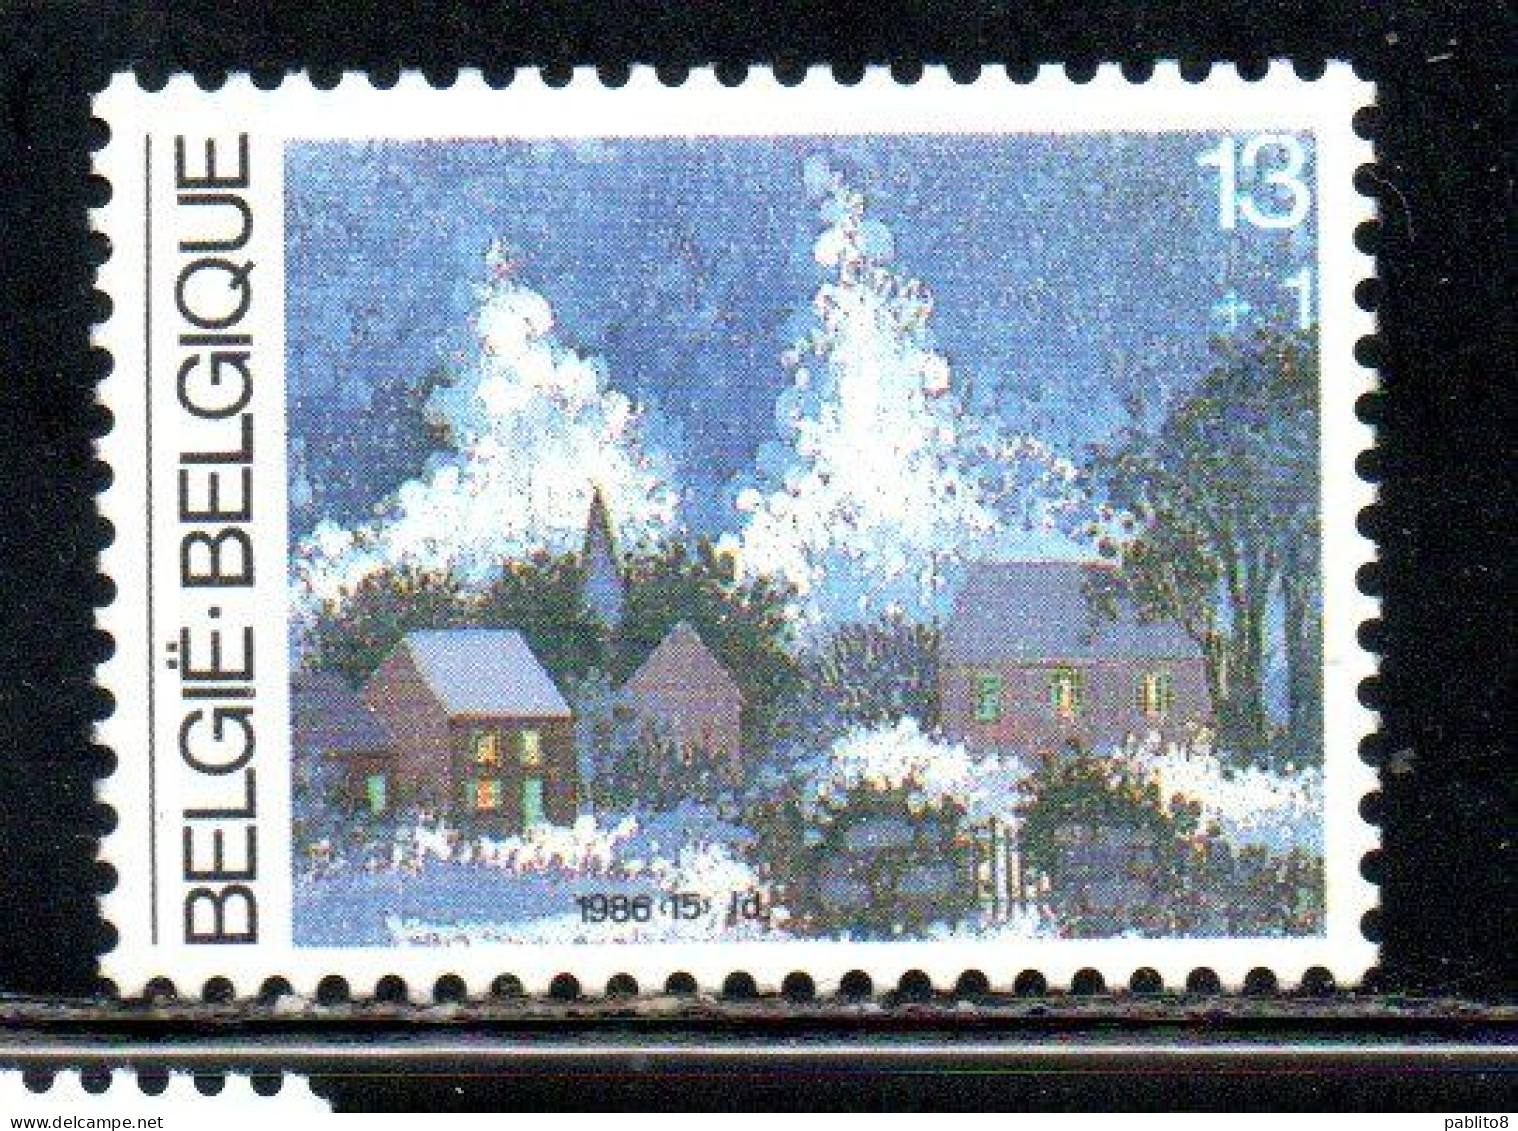 BELGIQUE BELGIE BELGIO BELGIUM 1986 CHRISTMAS NOEL NATALE WEIHNACHTEN NAVIDAD 13 + 1fr MNH - Neufs